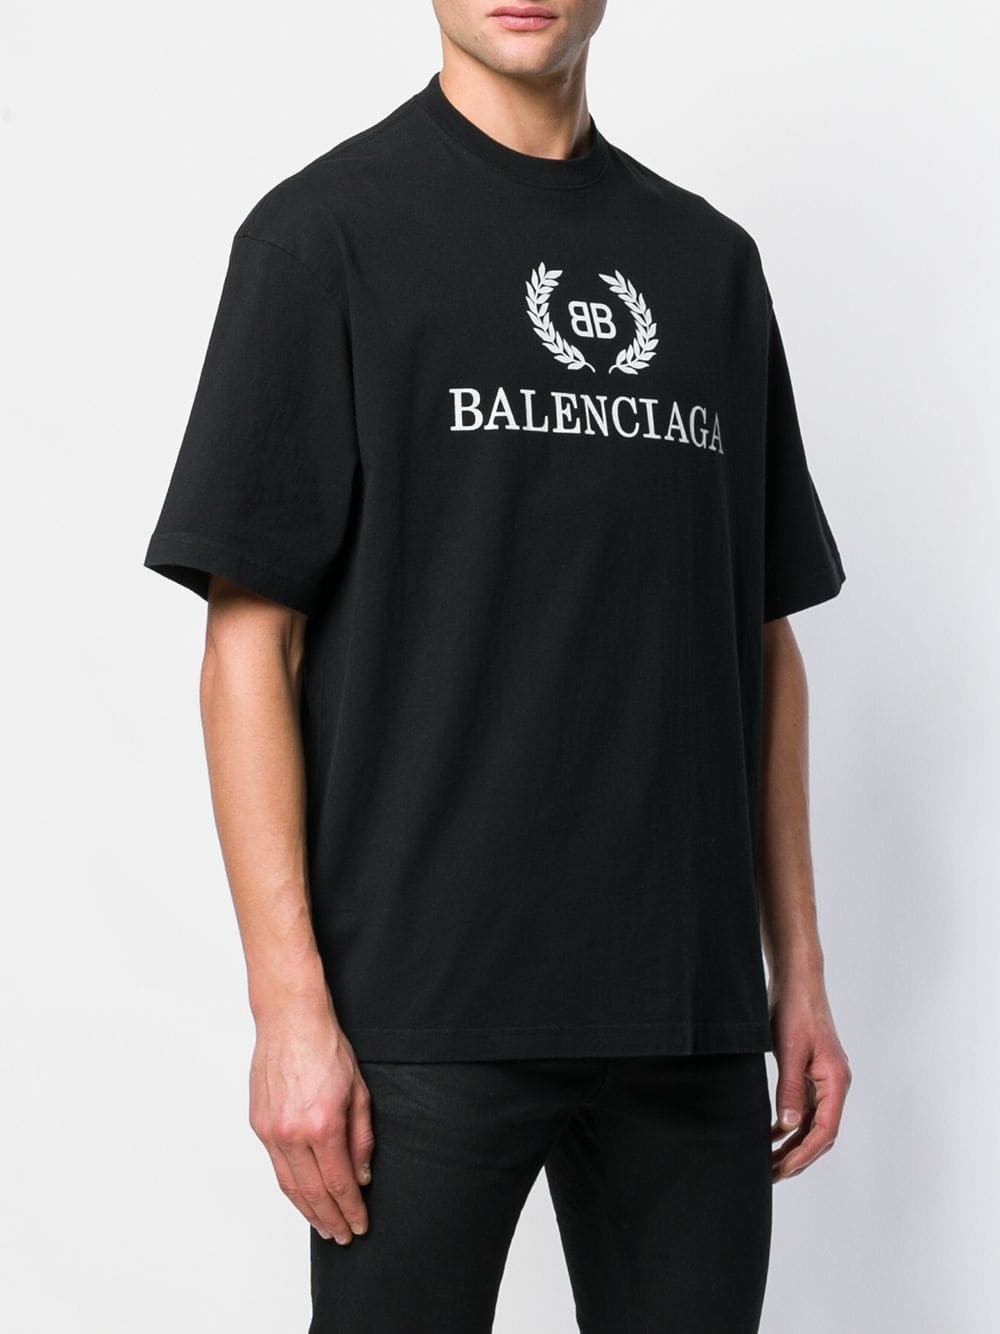 Balenciaga T Shirt : Balenciaga Balenciaga Mens Seamless T-shirt in